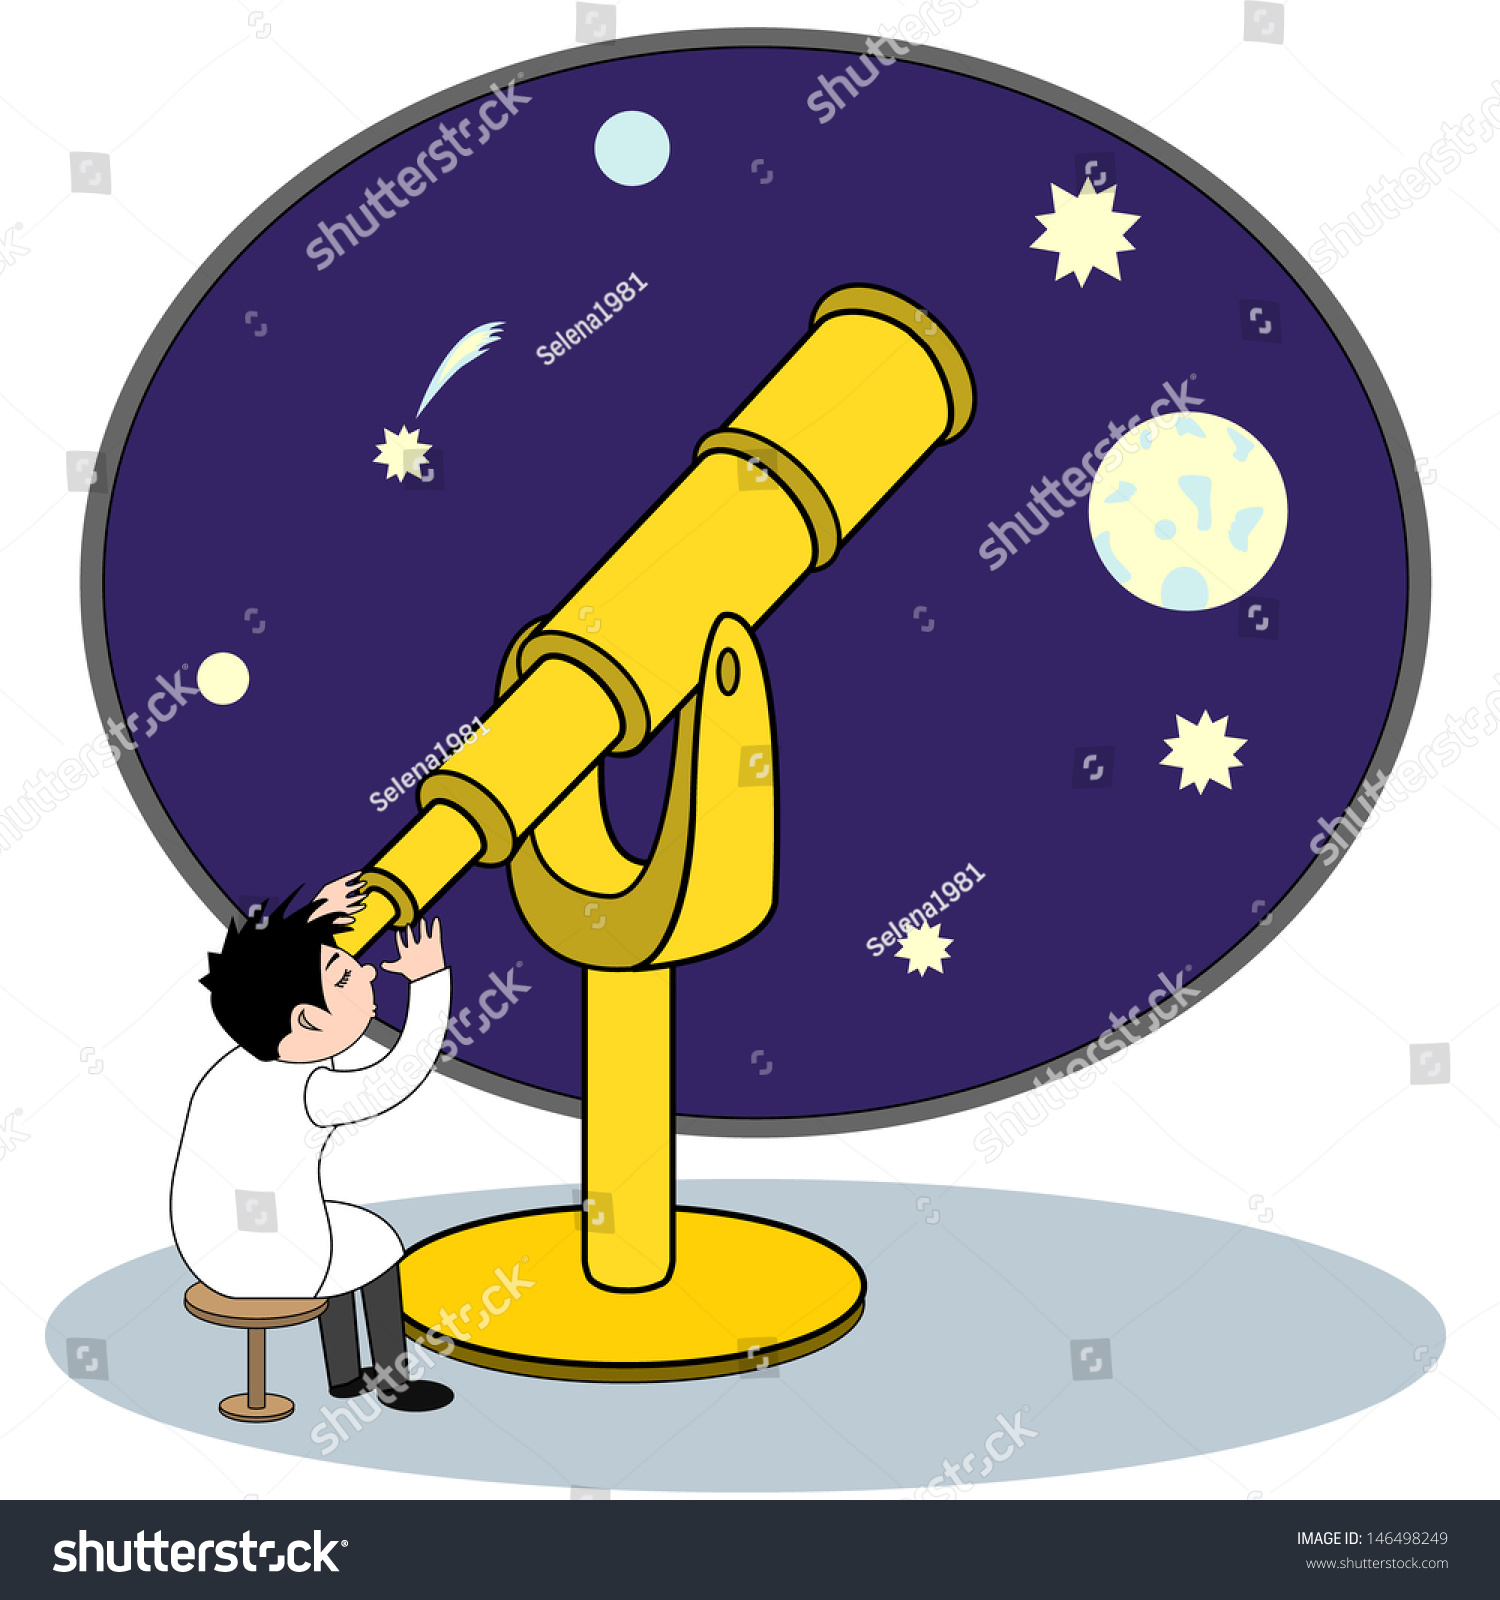 Телескоп мультяшный